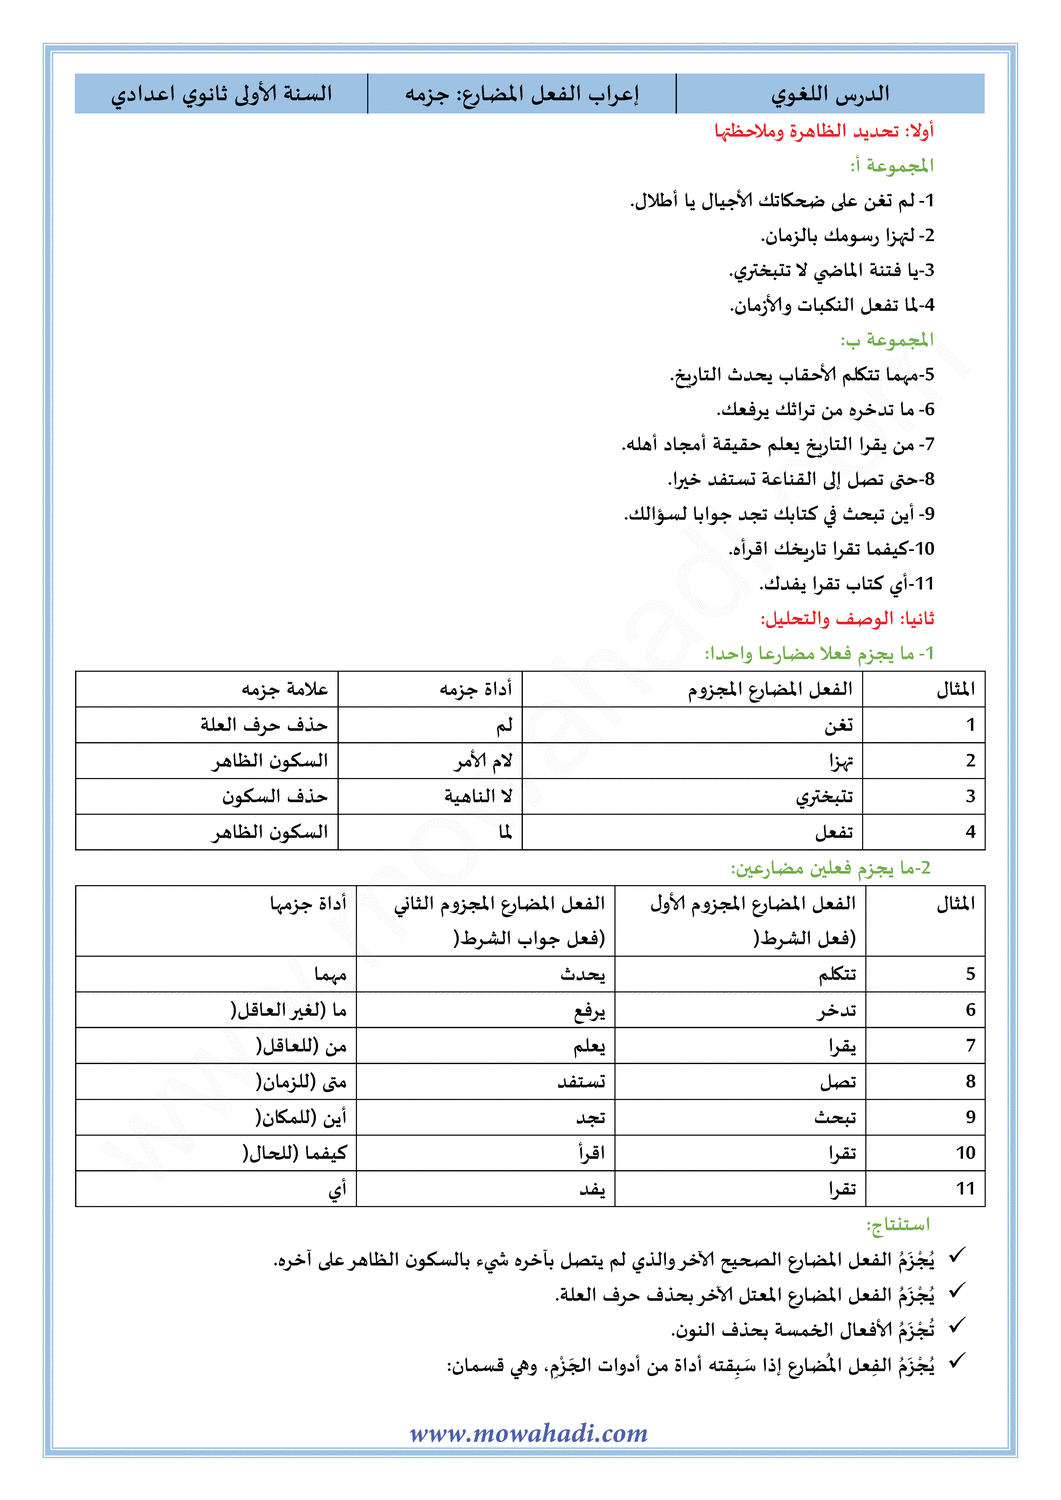 الدرس اللغوي اعراب الفعل المضارع : جزمه للسنة الأولى اعدادي في مادة اللغة العربية